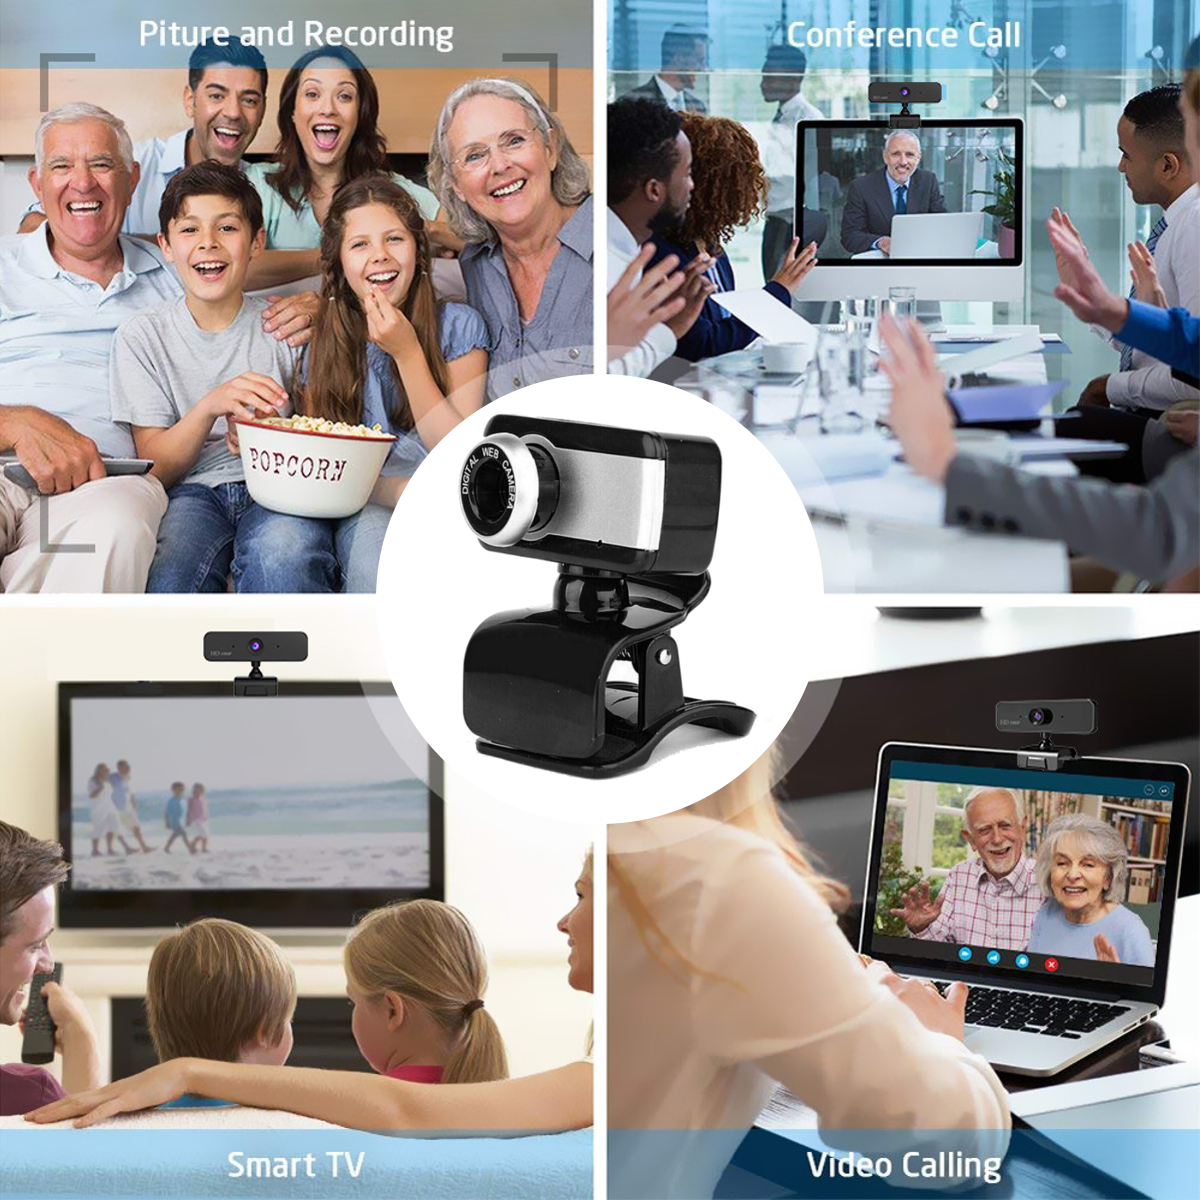 720P-HD-Webcam-CMOS-50-Mega-Pixels-USB20-Web-Camera-Built-in-Microphone-Camera-for-Desktop-Computer--1769965-7